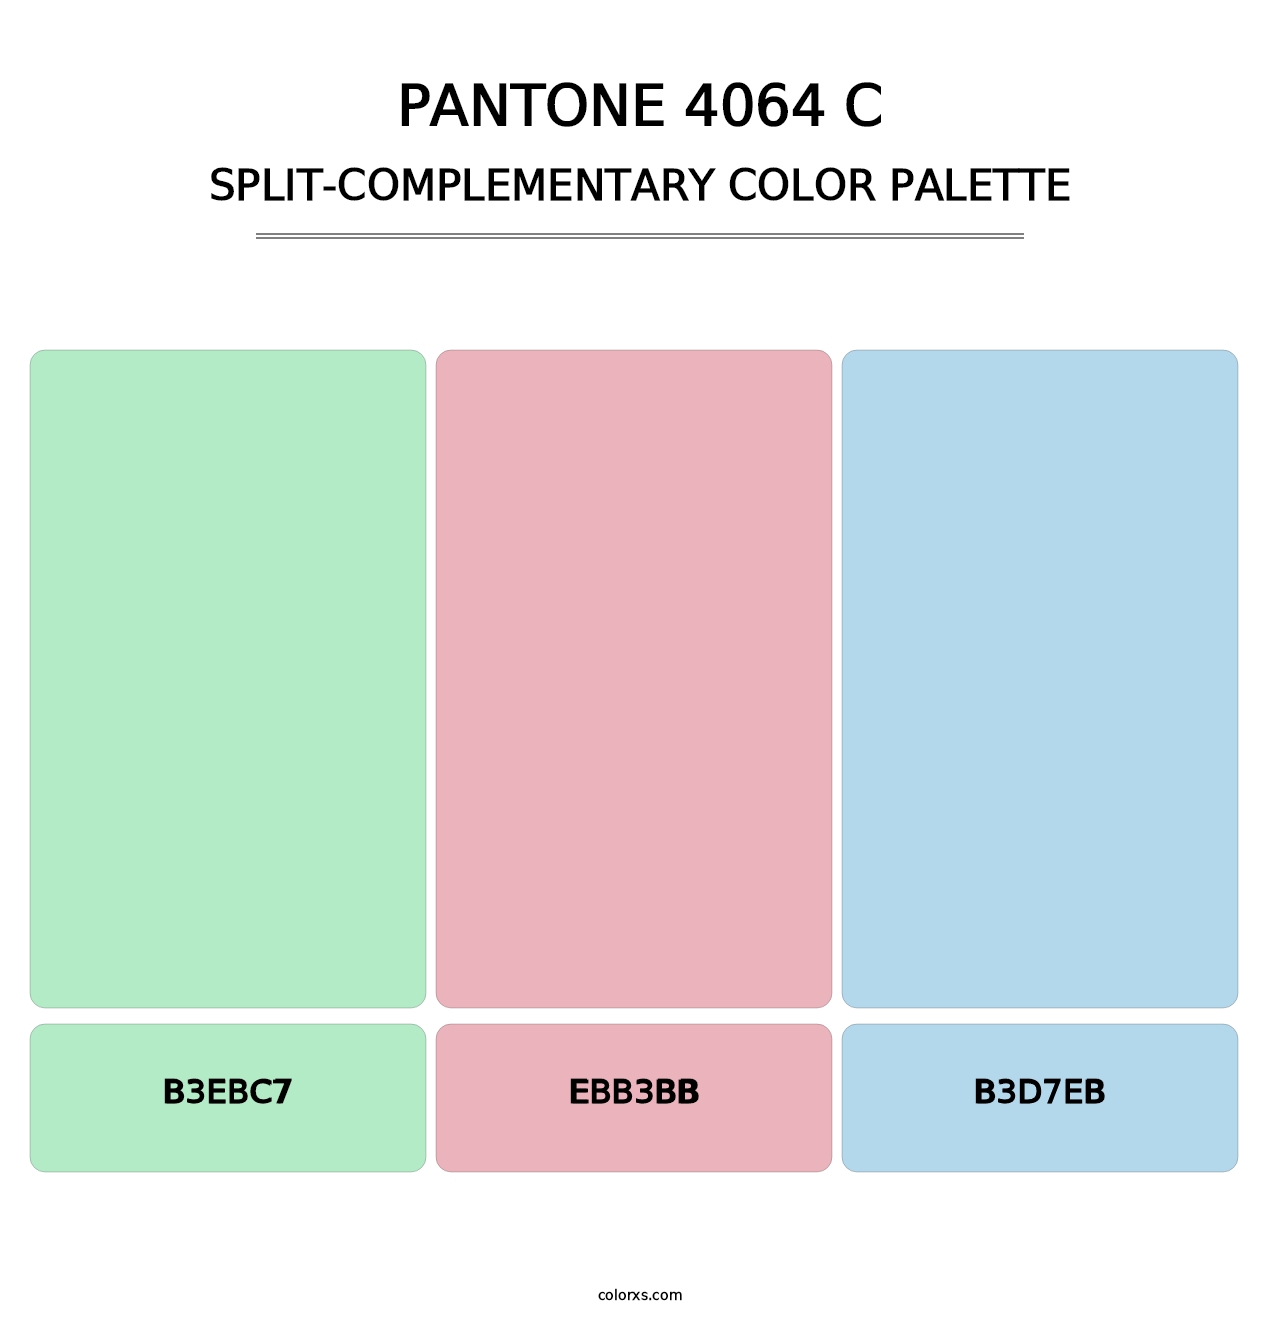 PANTONE 4064 C - Split-Complementary Color Palette